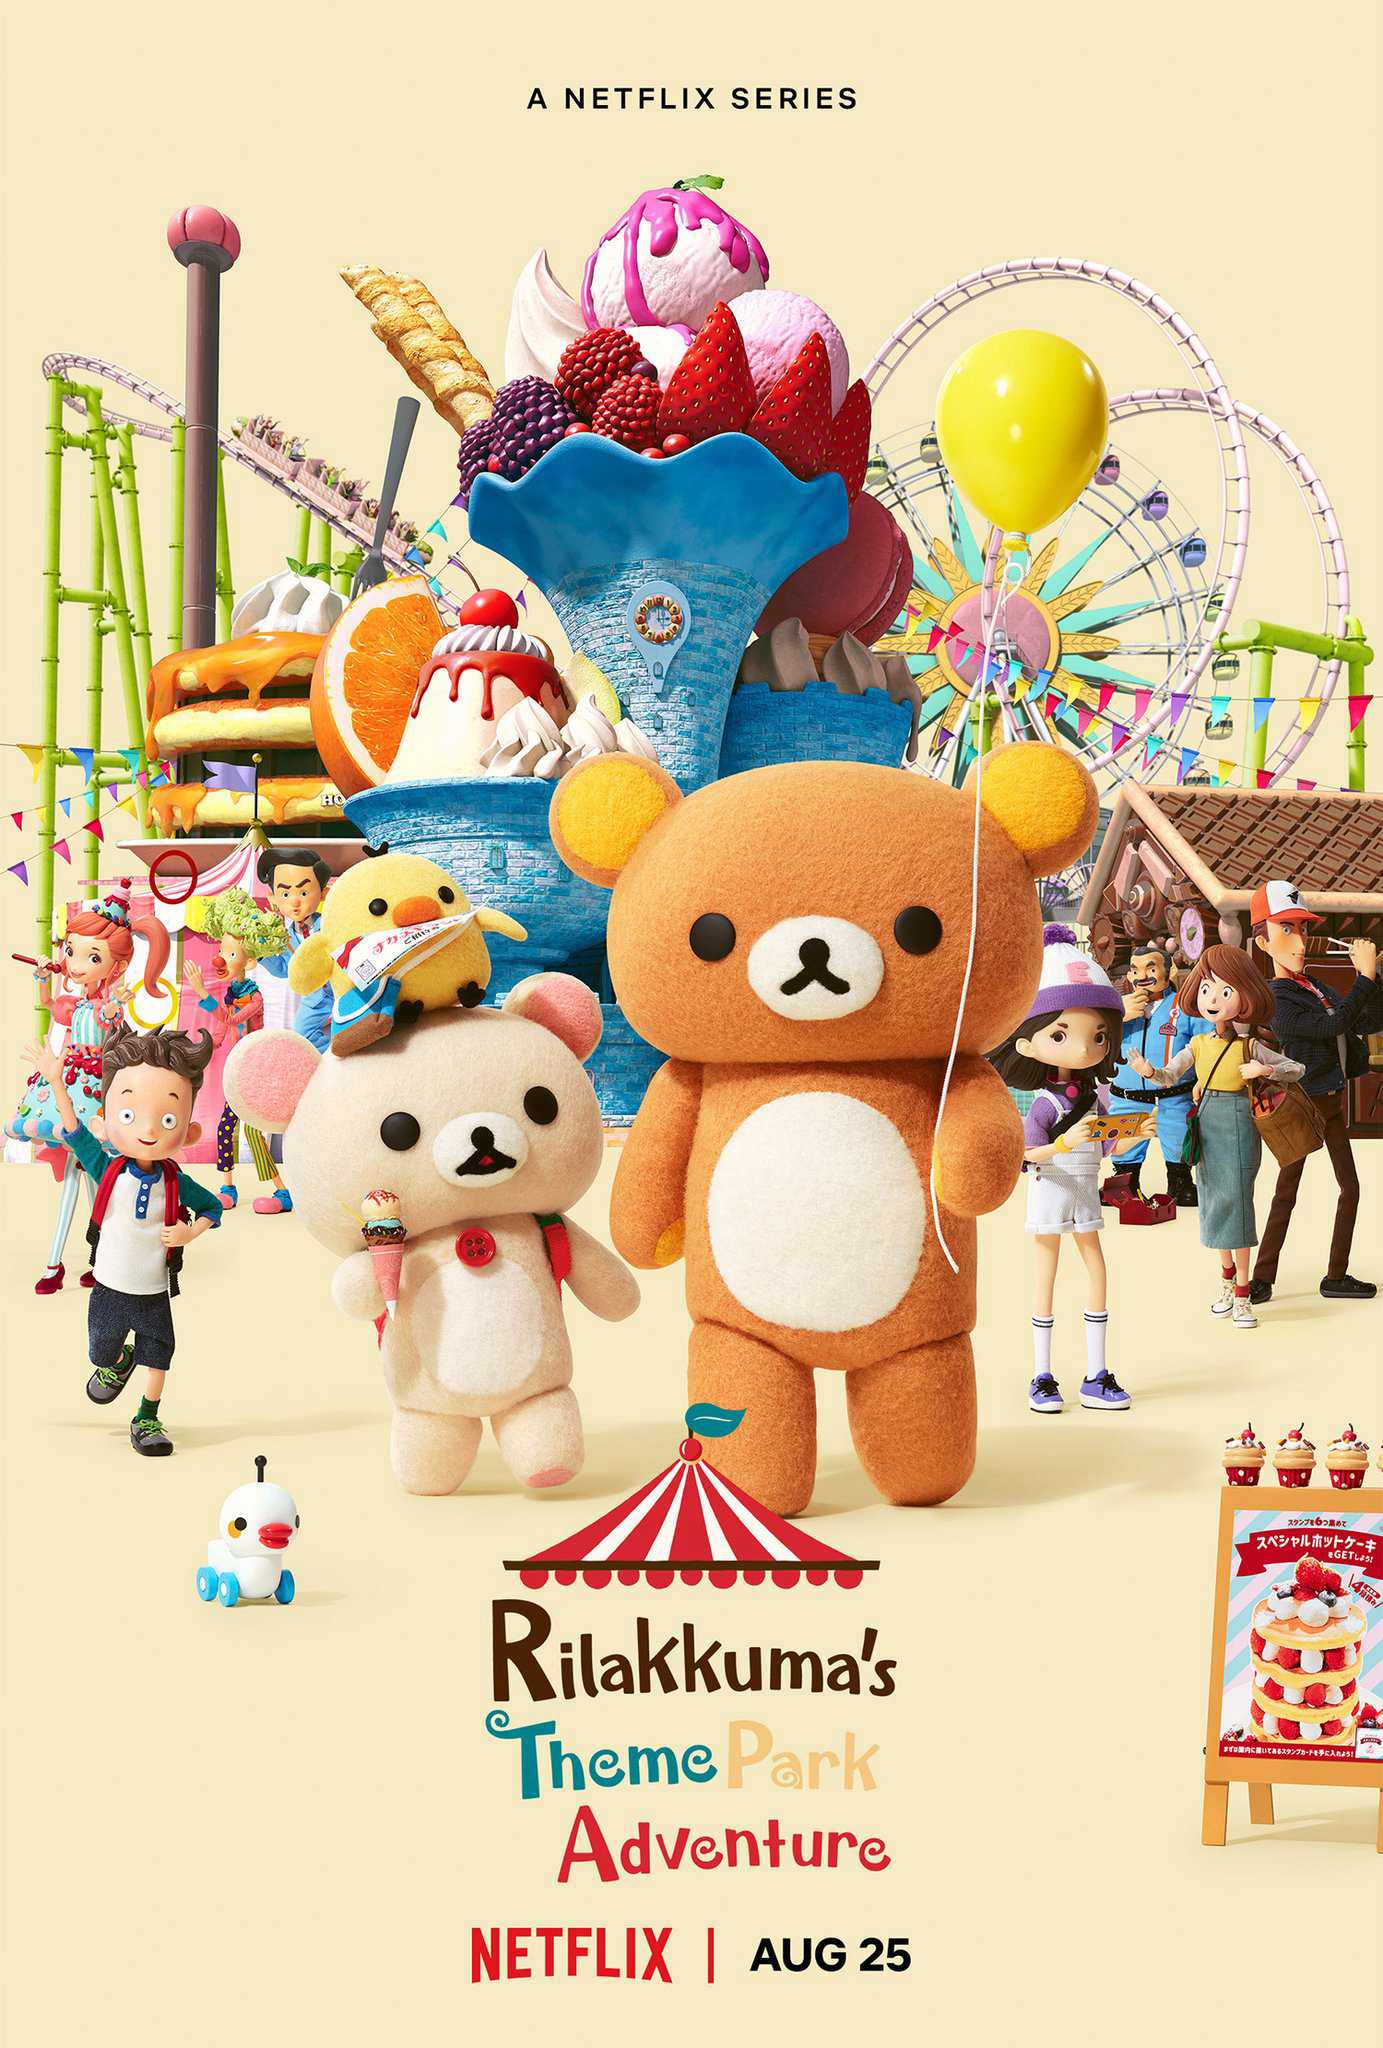 Rilakkuma: phiêu lưu tại công viên giải trí - Rilakkuma's theme park adventure